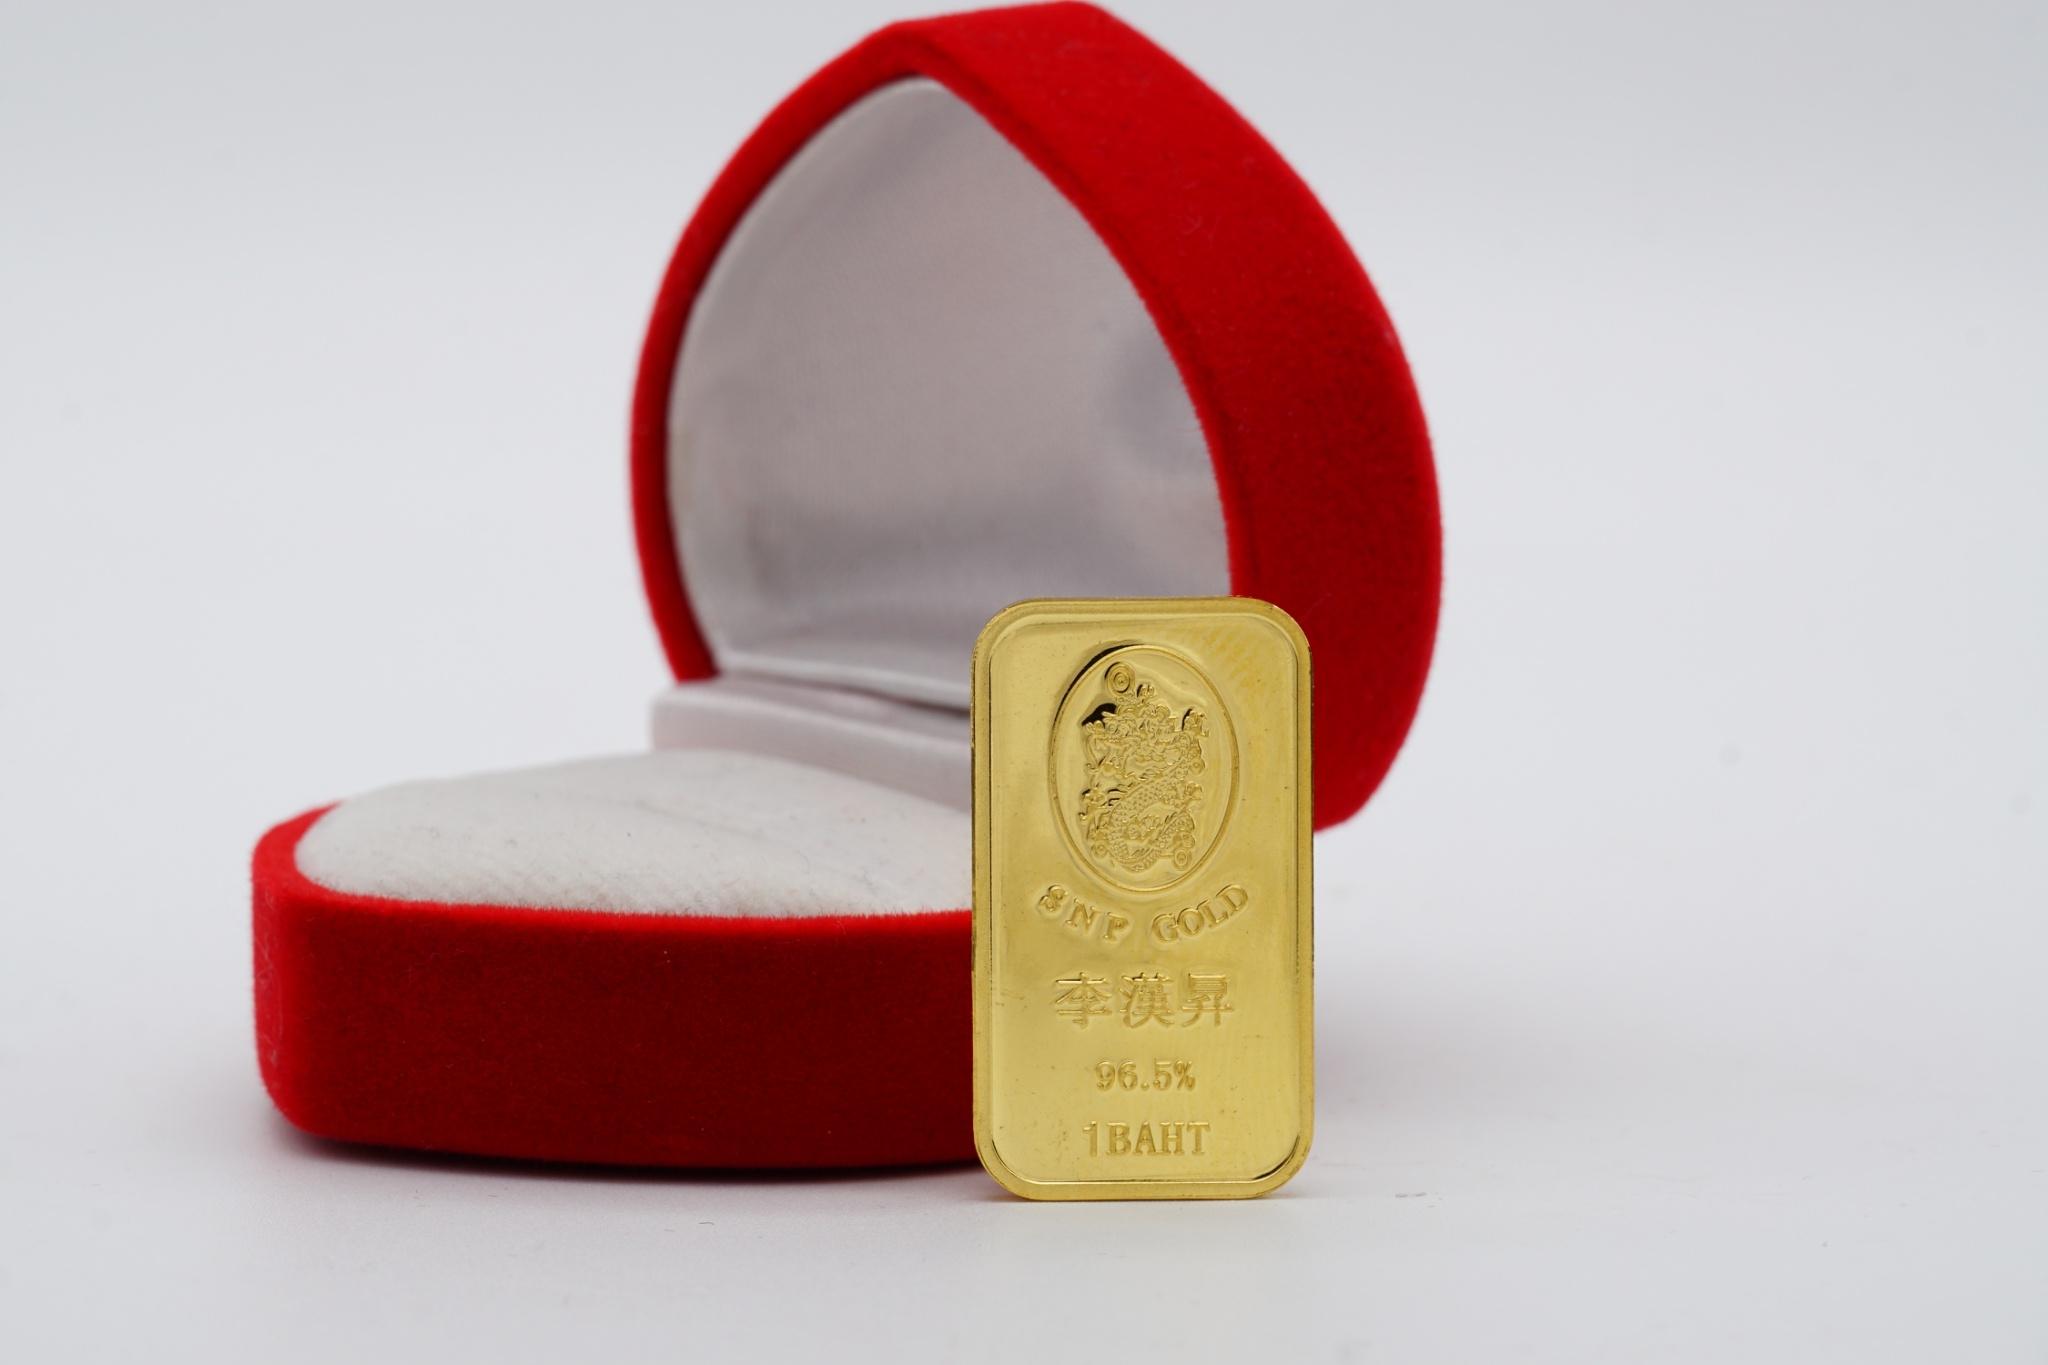 ทองคำแท่ง 96.5% น้ำหนัก 1 บาท 15.2 กรัม มีใบรับประกัน